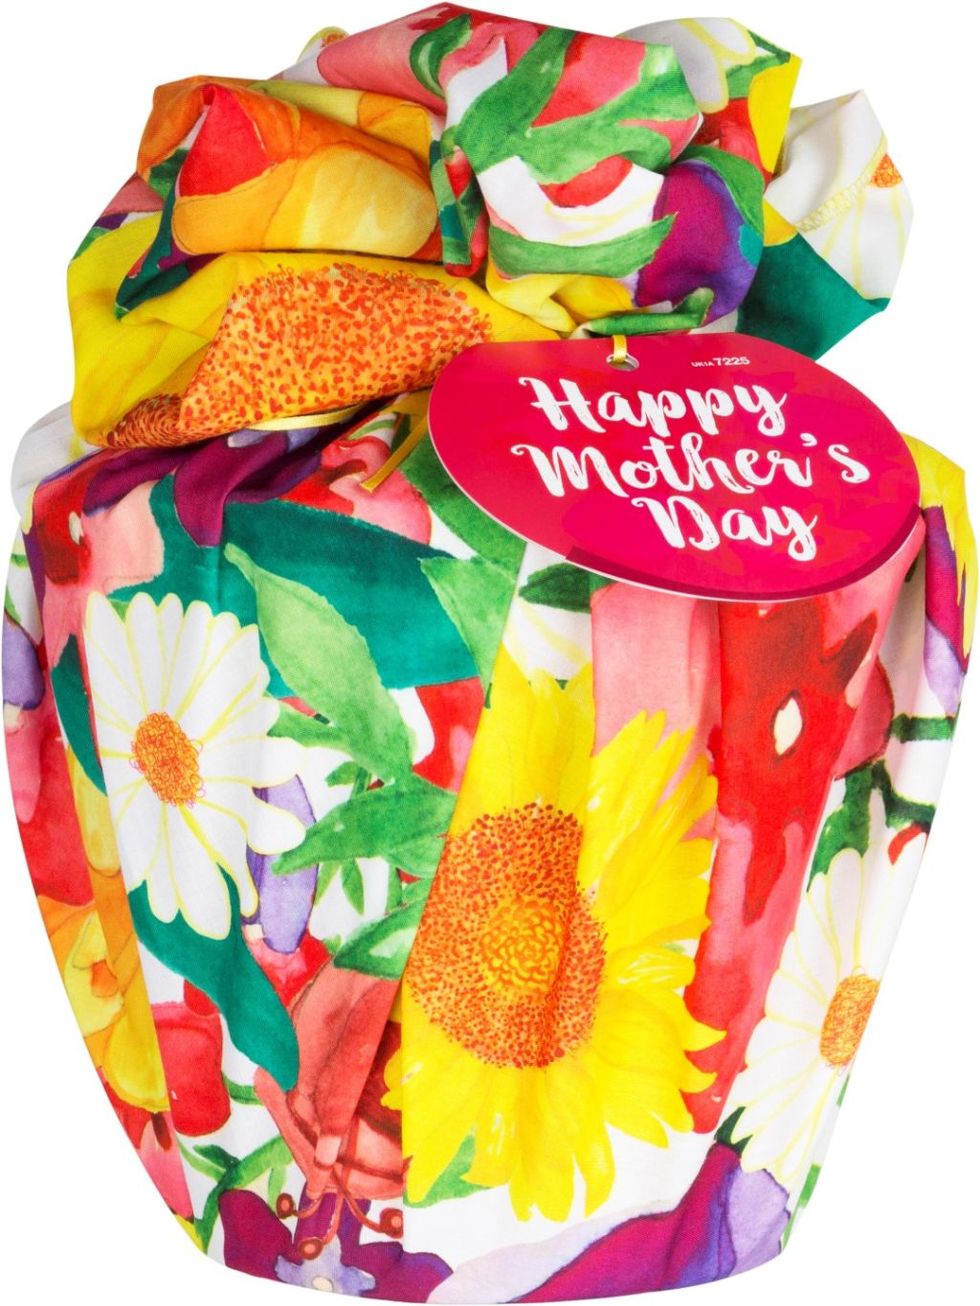 Festa della mamma: idee per regali last minute e originali